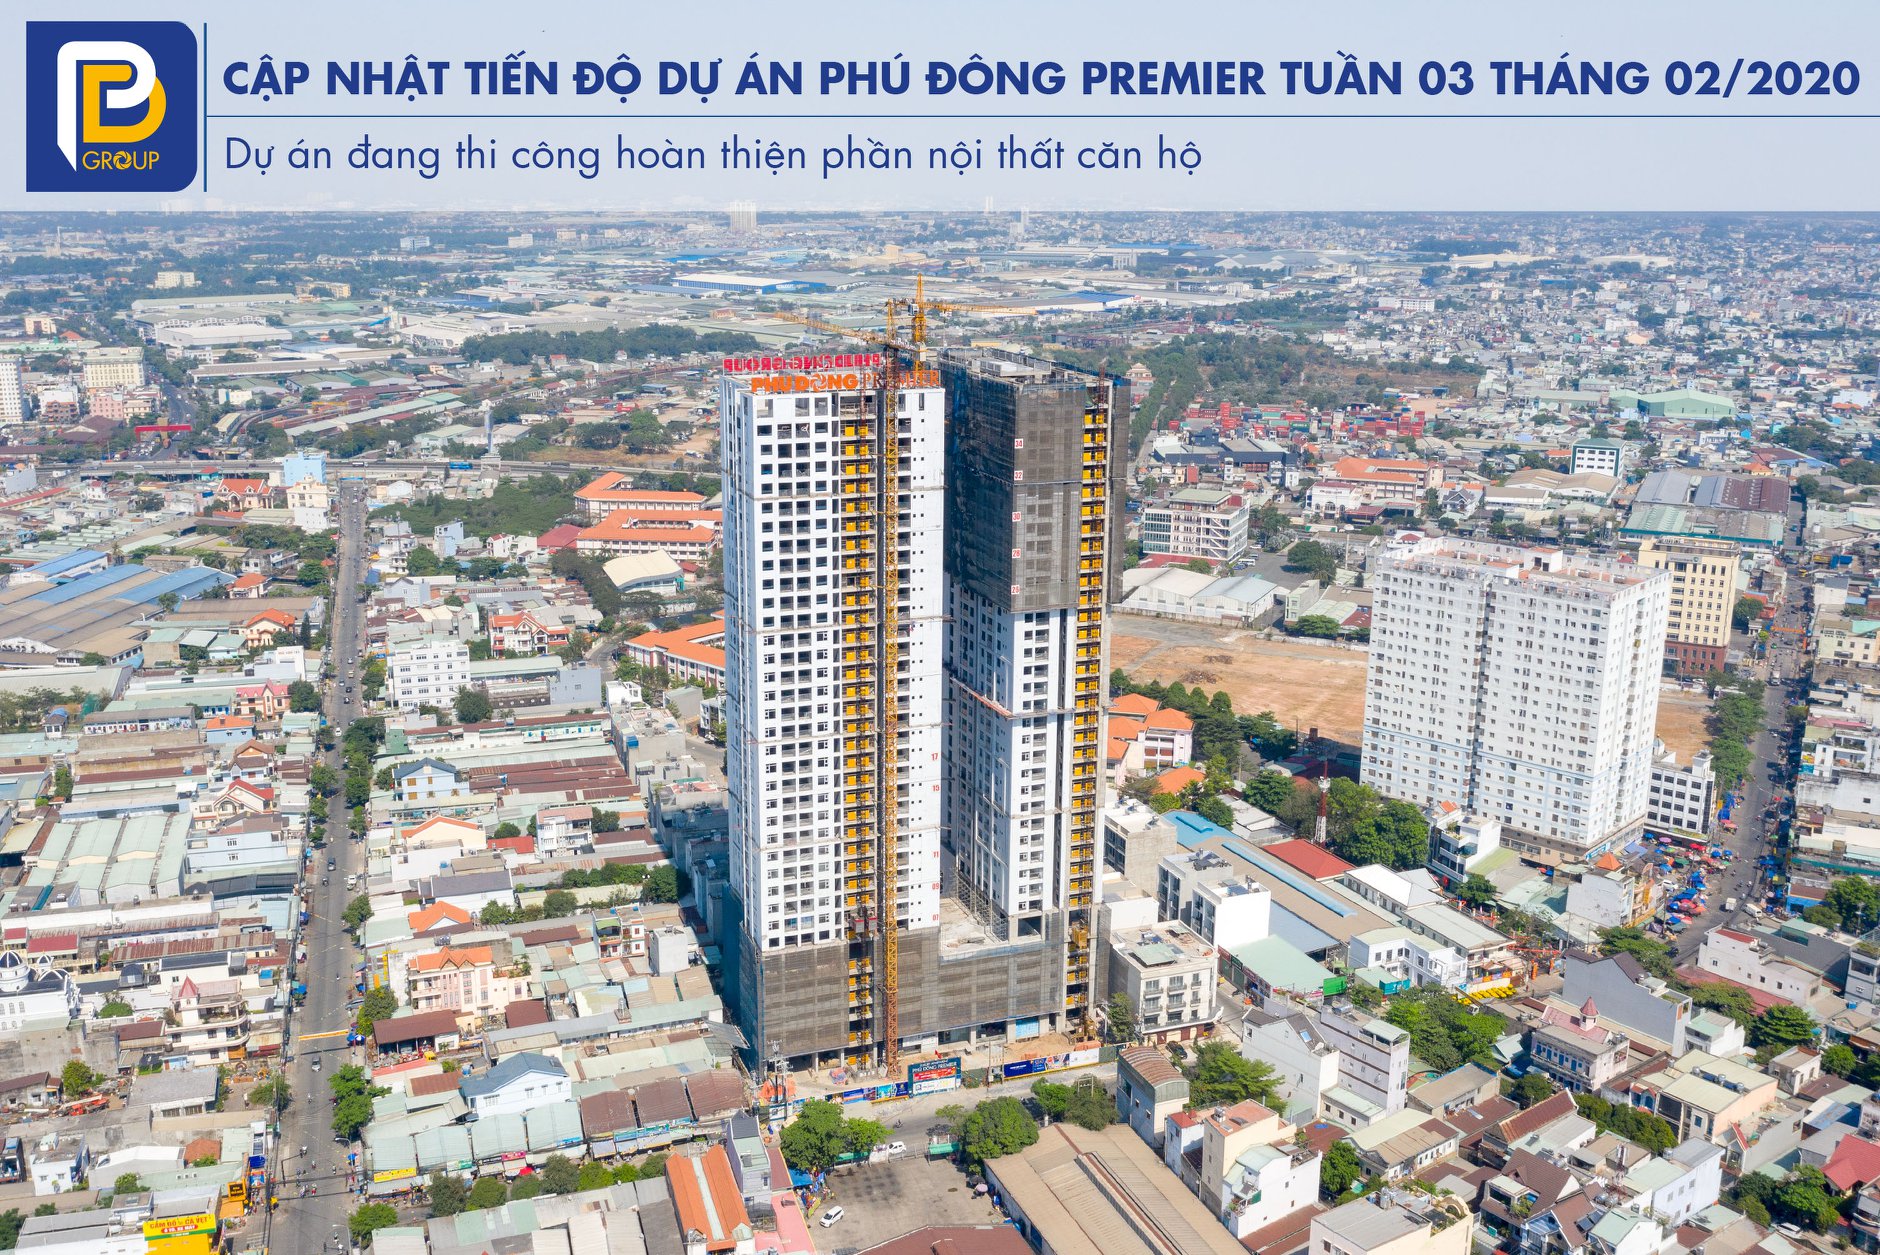 Tiến độ xây dựng căn hộ Phú Đông Premier tháng 02/2020